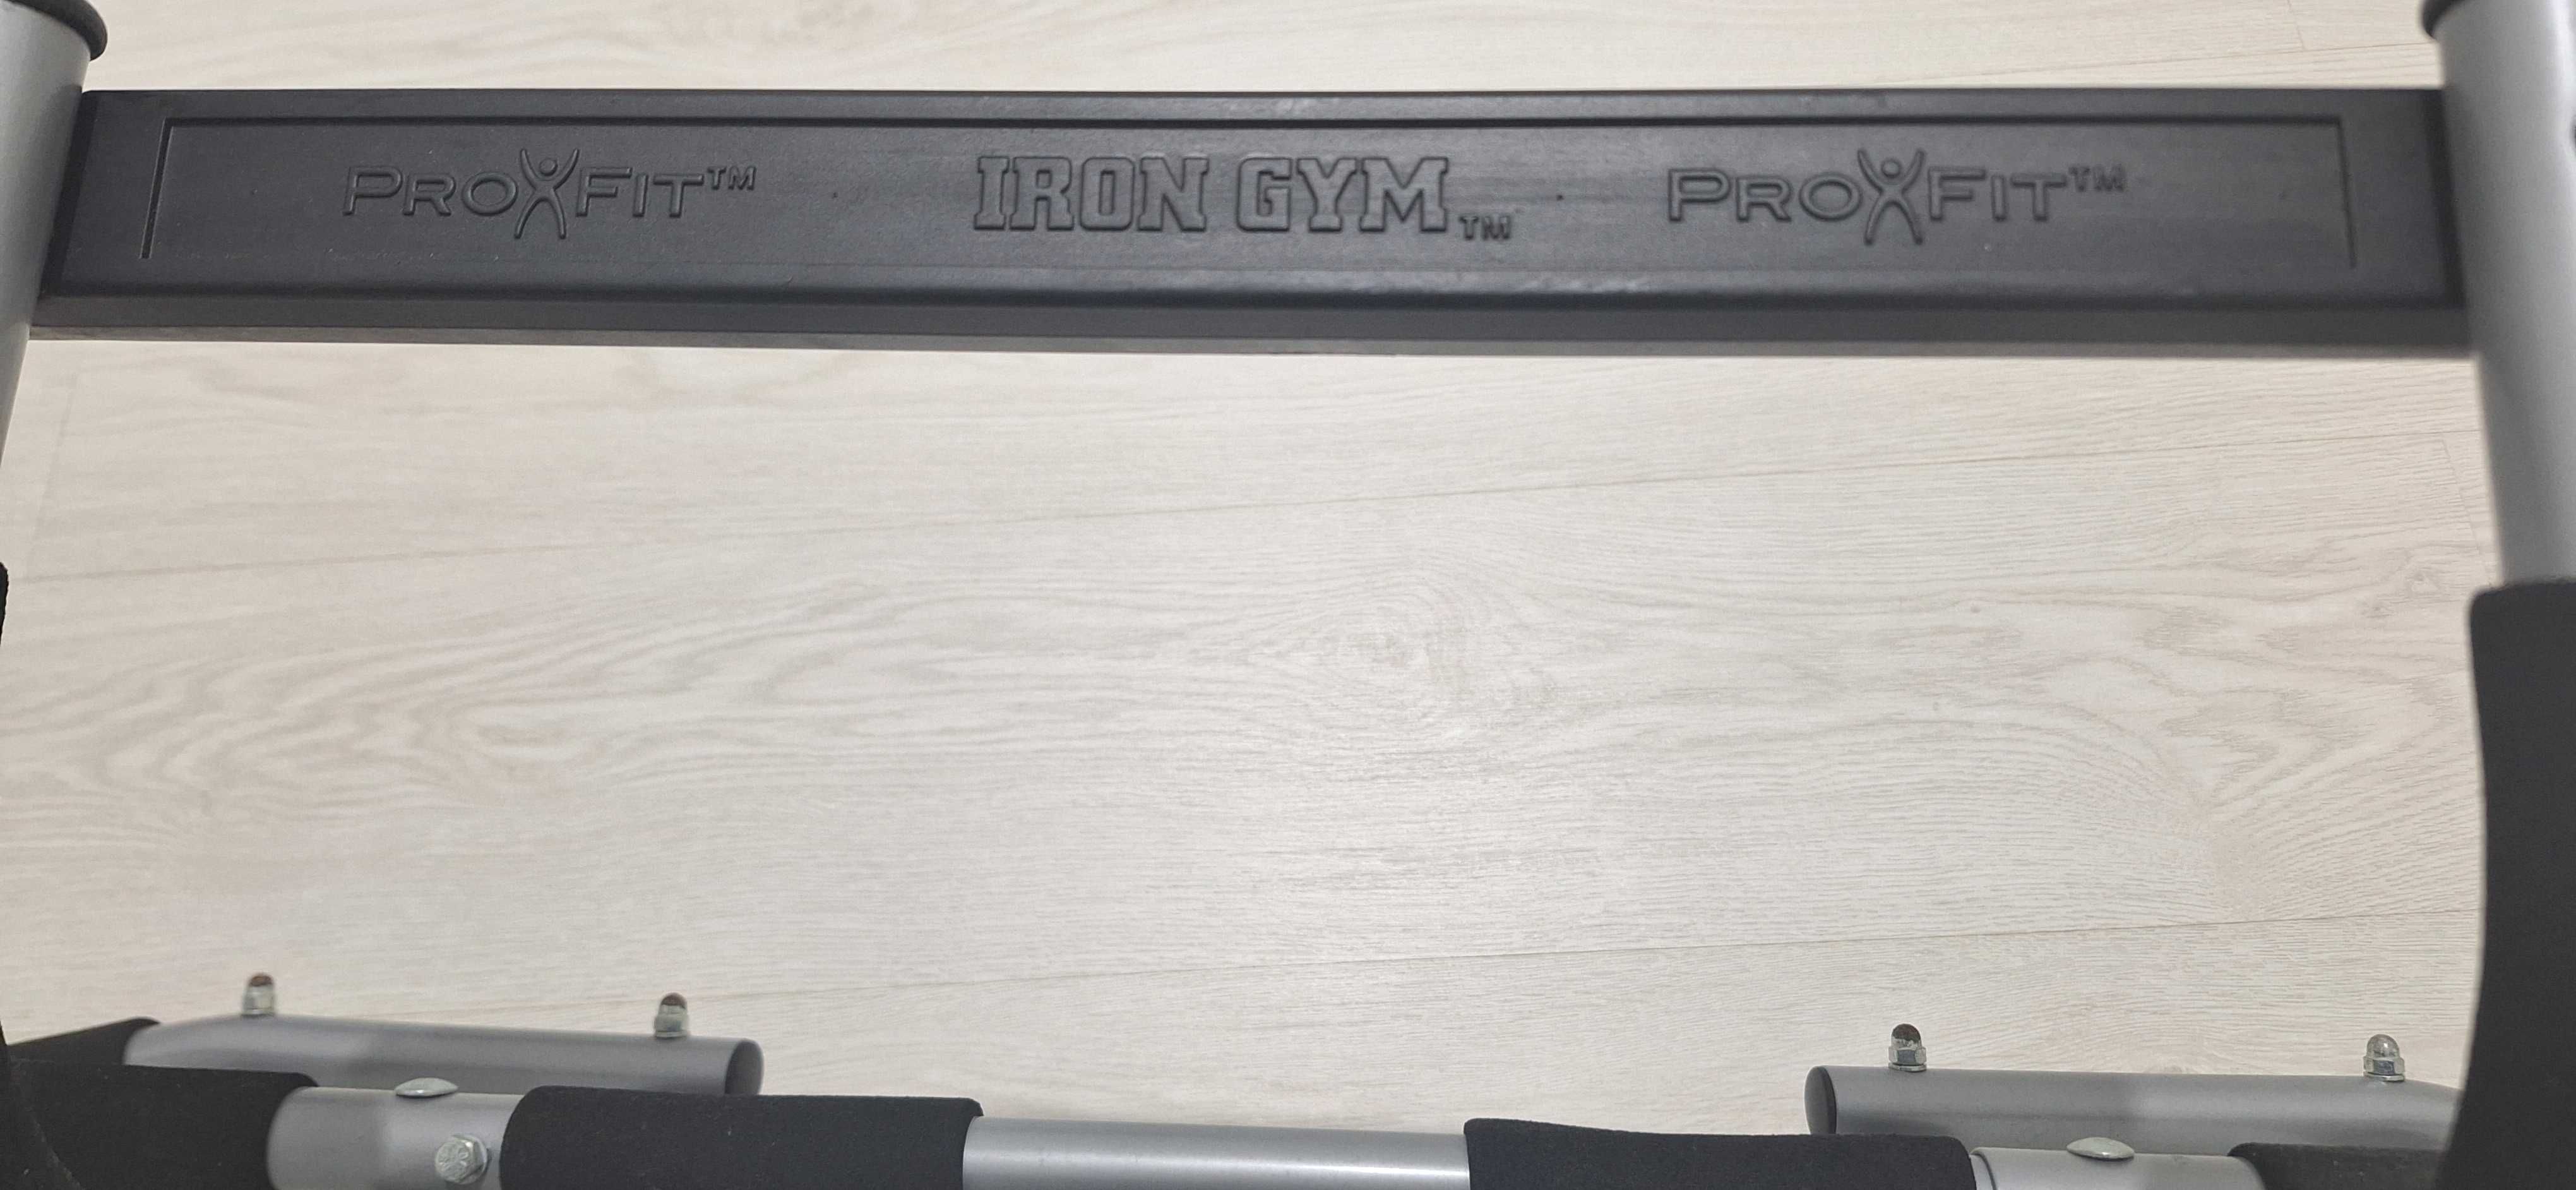 Barra para elevações treino/musculação/fitness Iron Gym ProXFit